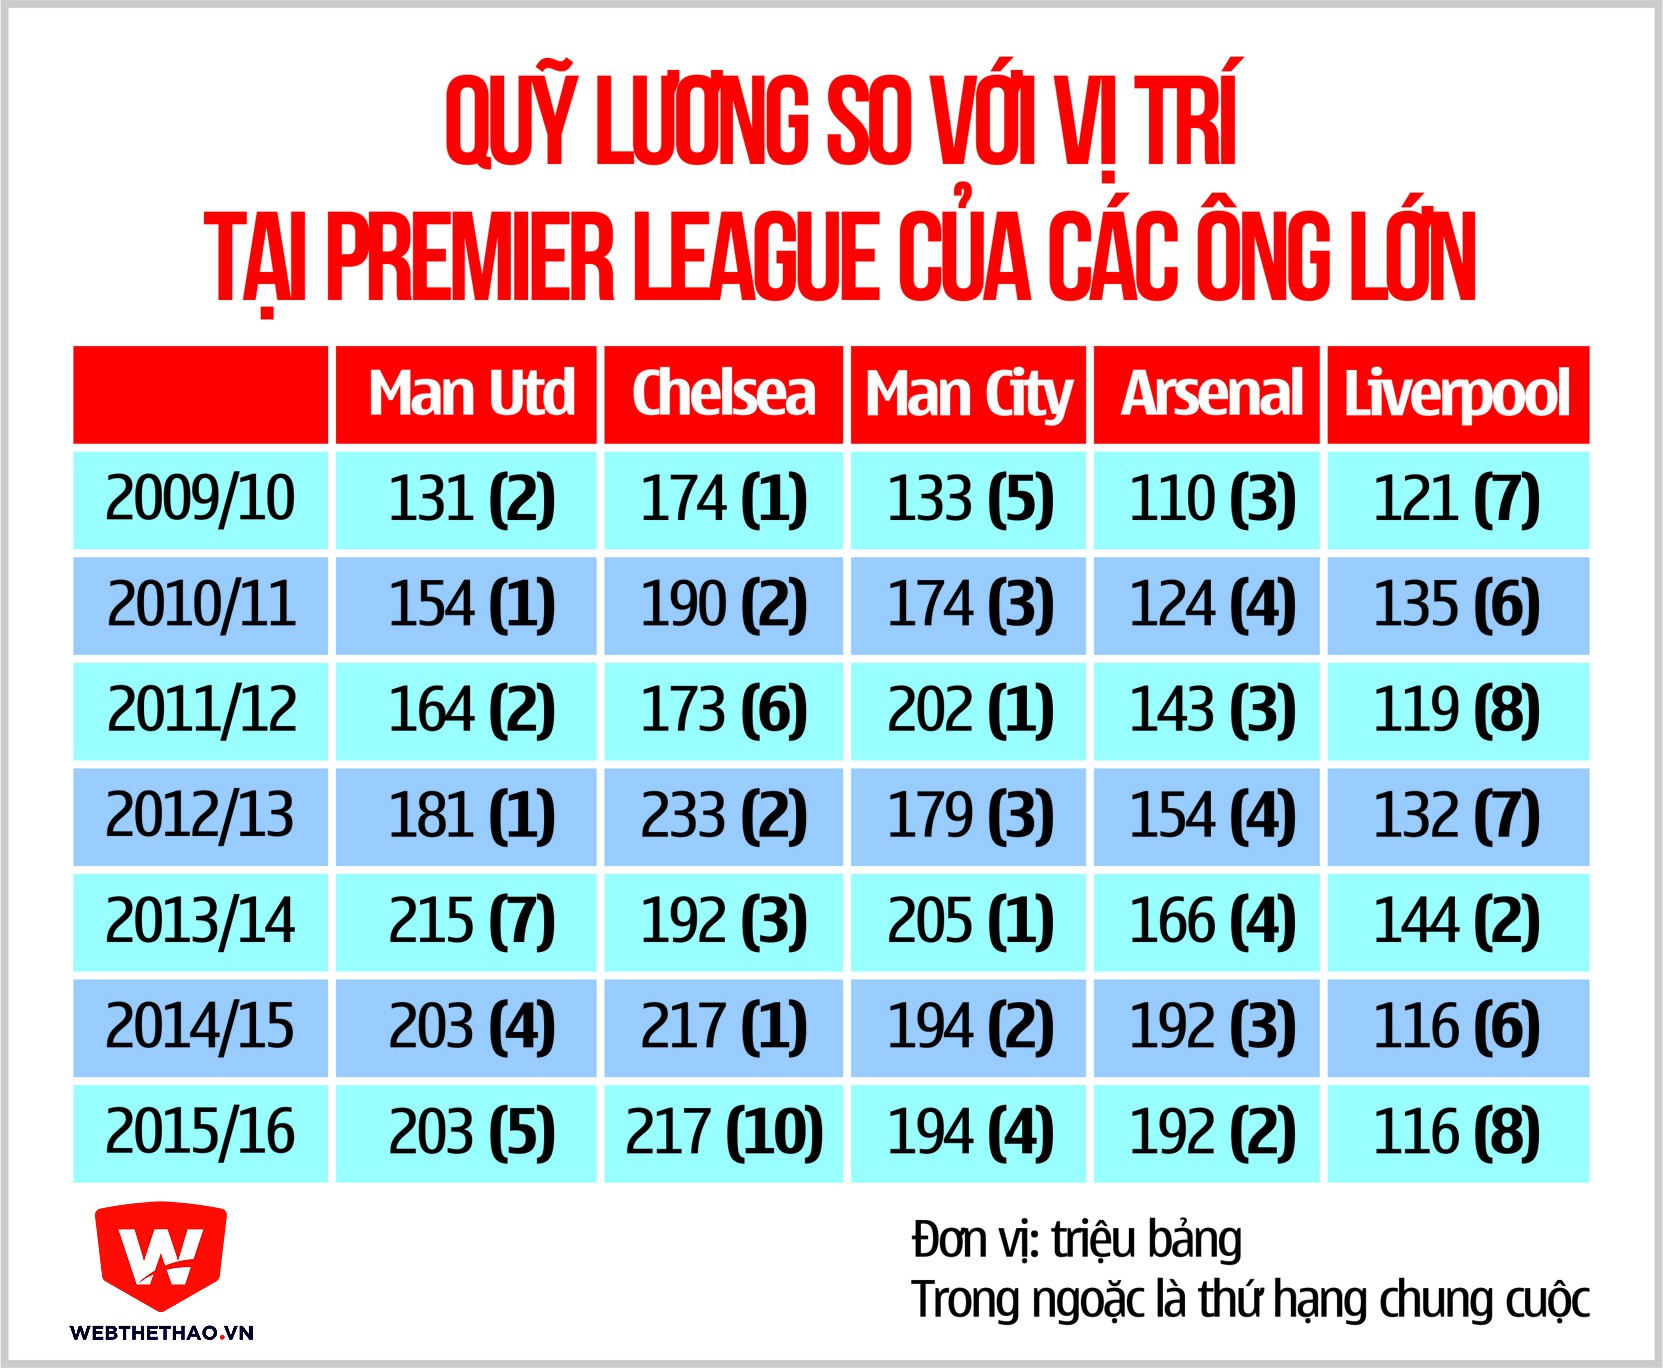 Quỹ lương và thứ hạng của các CLB Premier League